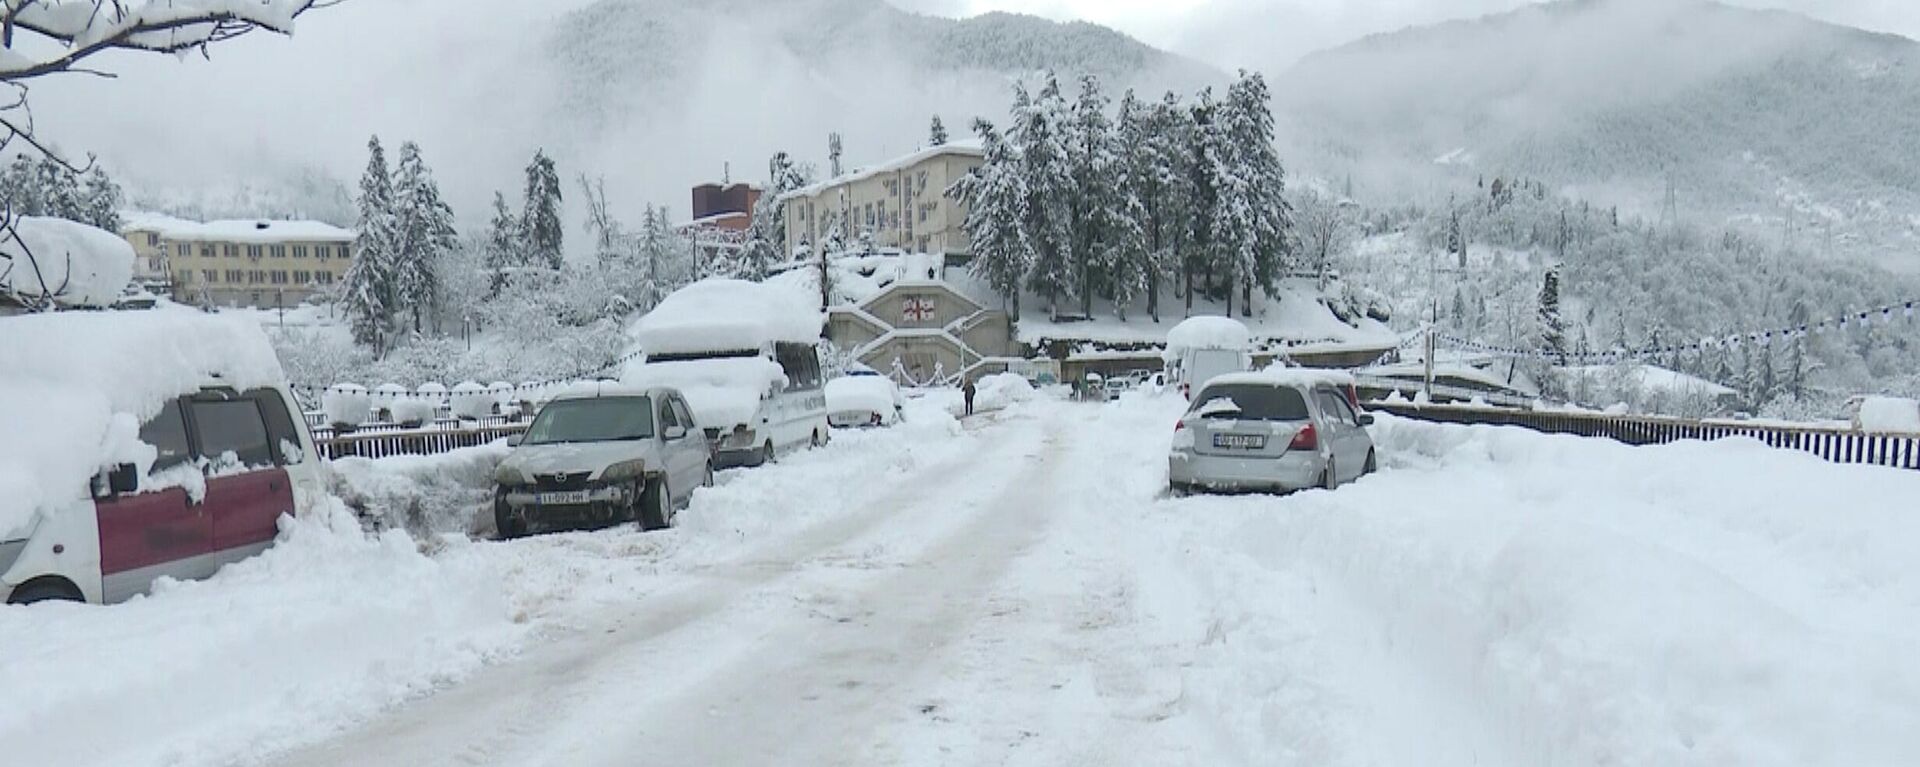 Снегопад в горной Аджарии. Зимние пейзажи. Горные села в снегу - Sputnik Грузия, 1920, 18.01.2022